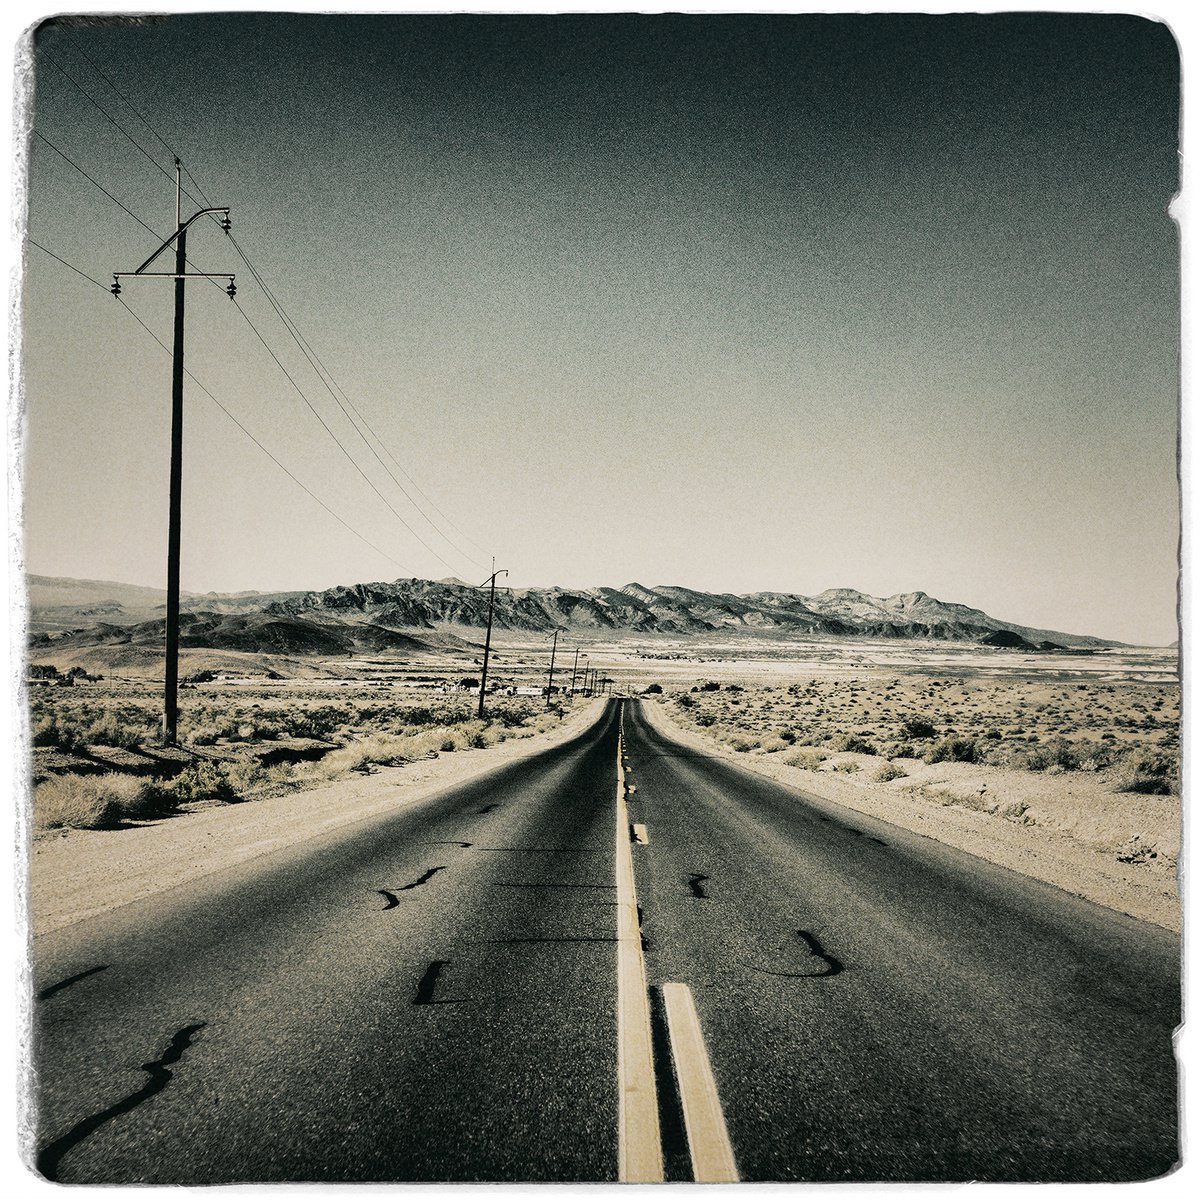 Mojave Road Trip, Tecopa by Heike Bohnstengel